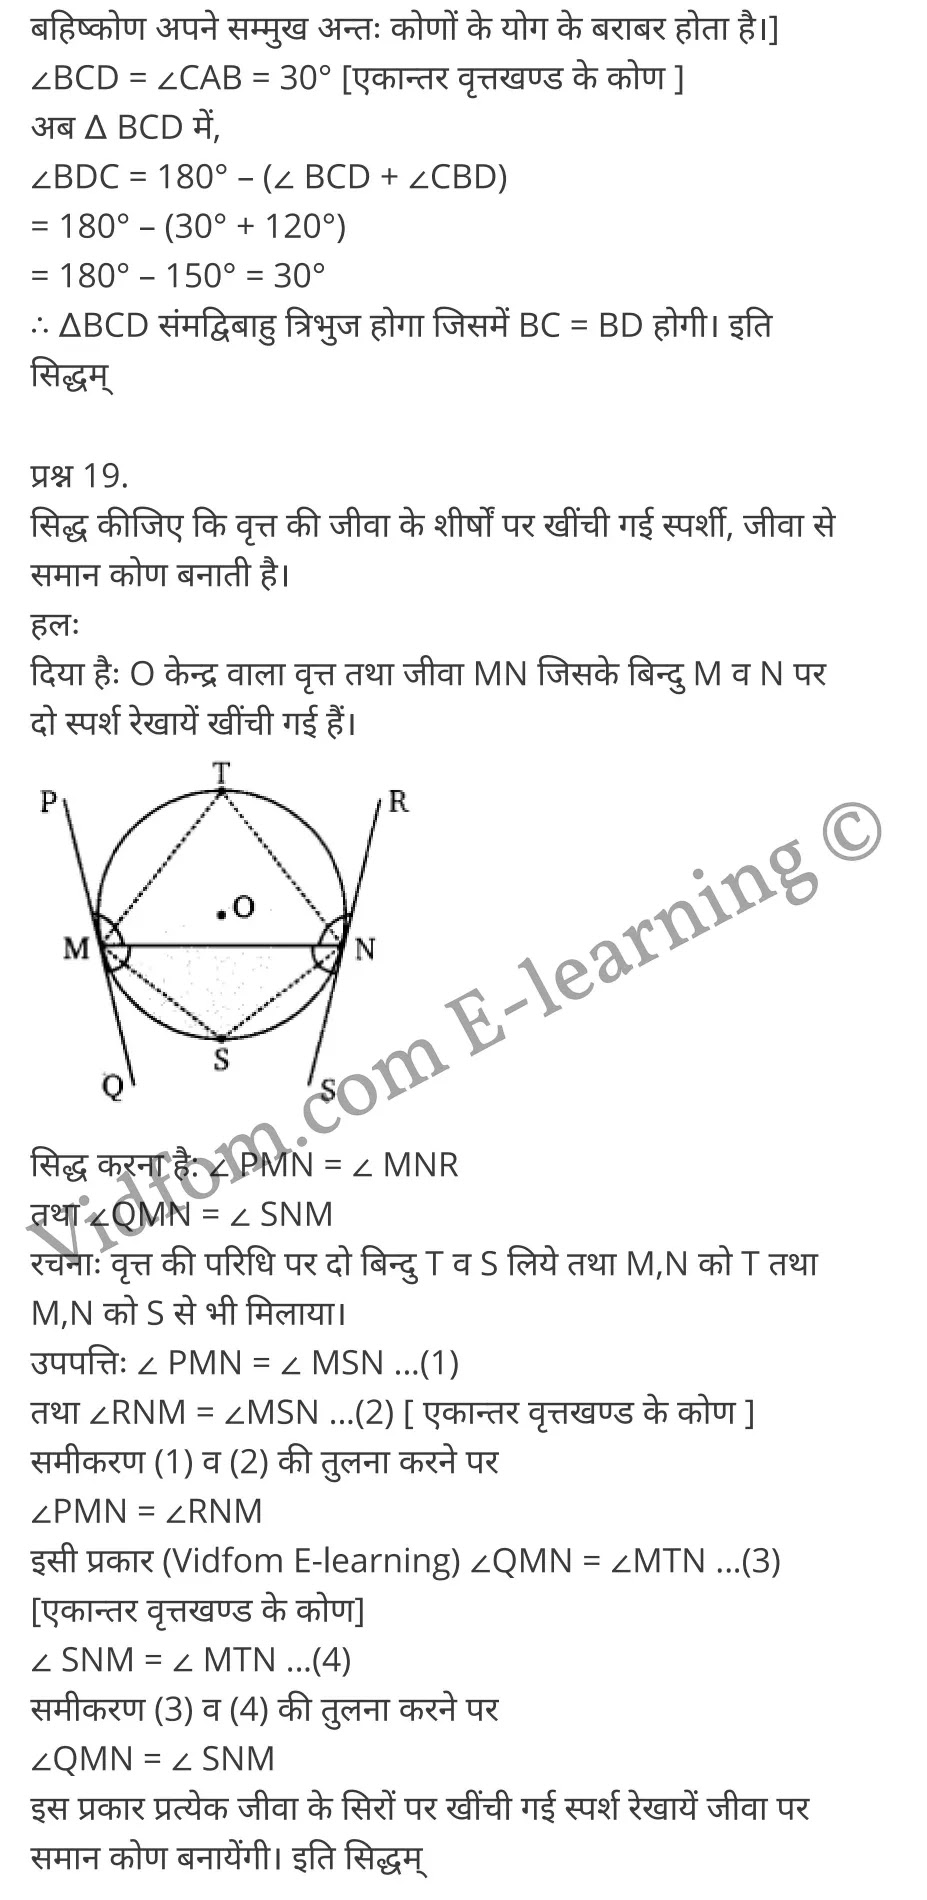 Balaji Maths Book Solutions Class 10 Chapter 8 Circles (वृत्त)  Chapter 8 Circles Ex 8.1 Chapter 8 Circles Ex 8.2 कक्षा 10 बालाजी गणित  के नोट्स  हिंदी में एनसीईआरटी समाधान,     class 10 Balaji Maths Chapter 8,   class 10 Balaji Maths Chapter 8 ncert solutions in Hindi,   class 10 Balaji Maths Chapter 8 notes in hindi,   class 10 Balaji Maths Chapter 8 question answer,   class 10 Balaji Maths Chapter 8 notes,   class 10 Balaji Maths Chapter 8 class 10 Balaji Maths Chapter 8 in  hindi,    class 10 Balaji Maths Chapter 8 important questions in  hindi,   class 10 Balaji Maths Chapter 8 notes in hindi,    class 10 Balaji Maths Chapter 8 test,   class 10 Balaji Maths Chapter 8 pdf,   class 10 Balaji Maths Chapter 8 notes pdf,   class 10 Balaji Maths Chapter 8 exercise solutions,   class 10 Balaji Maths Chapter 8 notes study rankers,   class 10 Balaji Maths Chapter 8 notes,    class 10 Balaji Maths Chapter 8  class 10  notes pdf,   class 10 Balaji Maths Chapter 8 class 10  notes  ncert,   class 10 Balaji Maths Chapter 8 class 10 pdf,   class 10 Balaji Maths Chapter 8  book,   class 10 Balaji Maths Chapter 8 quiz class 10  ,    10  th class 10 Balaji Maths Chapter 8  book up board,   up board 10  th class 10 Balaji Maths Chapter 8 notes,  class 10 Balaji Maths,   class 10 Balaji Maths ncert solutions in Hindi,   class 10 Balaji Maths notes in hindi,   class 10 Balaji Maths question answer,   class 10 Balaji Maths notes,  class 10 Balaji Maths class 10 Balaji Maths Chapter 8 in  hindi,    class 10 Balaji Maths important questions in  hindi,   class 10 Balaji Maths notes in hindi,    class 10 Balaji Maths test,  class 10 Balaji Maths class 10 Balaji Maths Chapter 8 pdf,   class 10 Balaji Maths notes pdf,   class 10 Balaji Maths exercise solutions,   class 10 Balaji Maths,  class 10 Balaji Maths notes study rankers,   class 10 Balaji Maths notes,  class 10 Balaji Maths notes,   class 10 Balaji Maths  class 10  notes pdf,   class 10 Balaji Maths class 10  notes  ncert,   class 10 Balaji Maths class 10 pdf,   class 10 Balaji Maths  book,  class 10 Balaji Maths quiz class 10  ,  10  th class 10 Balaji Maths    book up board,    up board 10  th class 10 Balaji Maths notes,      कक्षा 10 बालाजी गणित अध्याय 8 ,  कक्षा 10 बालाजी गणित, कक्षा 10 बालाजी गणित अध्याय 8  के नोट्स हिंदी में,  कक्षा 10 का हिंदी अध्याय 8 का प्रश्न उत्तर,  कक्षा 10 बालाजी गणित अध्याय 8  के नोट्स,  10 कक्षा बालाजी गणित  हिंदी में, कक्षा 10 बालाजी गणित अध्याय 8  हिंदी में,  कक्षा 10 बालाजी गणित अध्याय 8  महत्वपूर्ण प्रश्न हिंदी में, कक्षा 10   हिंदी के नोट्स  हिंदी में, बालाजी गणित हिंदी में  कक्षा 10 नोट्स pdf,    बालाजी गणित हिंदी में  कक्षा 10 नोट्स 2021 ncert,   बालाजी गणित हिंदी  कक्षा 10 pdf,   बालाजी गणित हिंदी में  पुस्तक,   बालाजी गणित हिंदी में की बुक,   बालाजी गणित हिंदी में  प्रश्नोत्तरी class 10 ,  बिहार बोर्ड 10  पुस्तक वीं हिंदी नोट्स,    बालाजी गणित कक्षा 10 नोट्स 2021 ncert,   बालाजी गणित  कक्षा 10 pdf,   बालाजी गणित  पुस्तक,   बालाजी गणित  प्रश्नोत्तरी class 10, कक्षा 10 बालाजी गणित,  कक्षा 10 बालाजी गणित  के नोट्स हिंदी में,  कक्षा 10 का हिंदी का प्रश्न उत्तर,  कक्षा 10 बालाजी गणित  के नोट्स,  10 कक्षा हिंदी 2021  हिंदी में, कक्षा 10 बालाजी गणित  हिंदी में,  कक्षा 10 बालाजी गणित  महत्वपूर्ण प्रश्न हिंदी में, कक्षा 10 बालाजी गणित  नोट्स  हिंदी में,